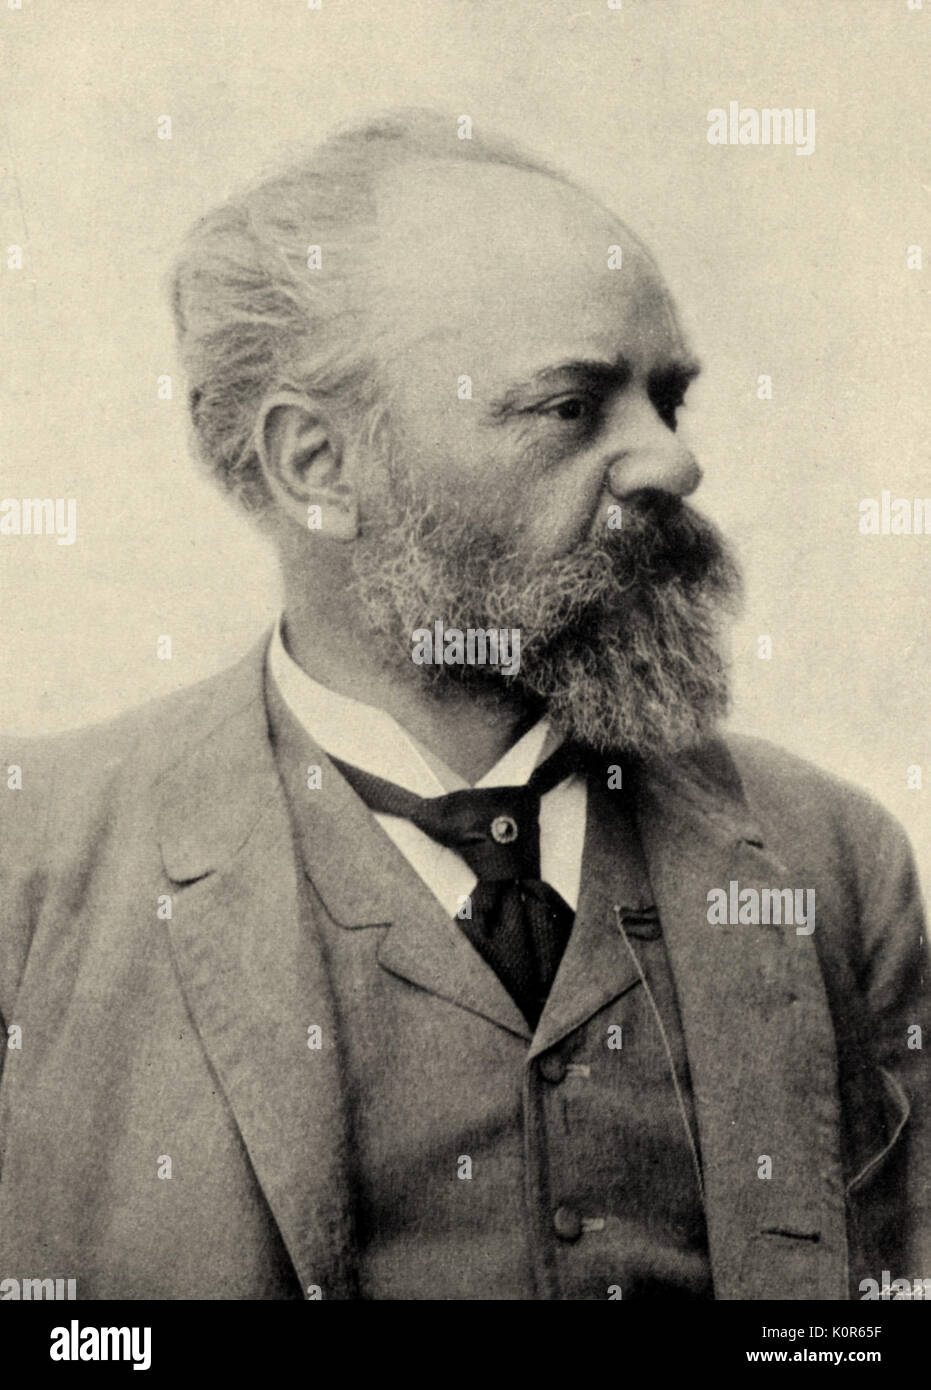 DVORAK, Antonin - 1894 tschechische Komponist (1841-1904) Porträt Stockfoto